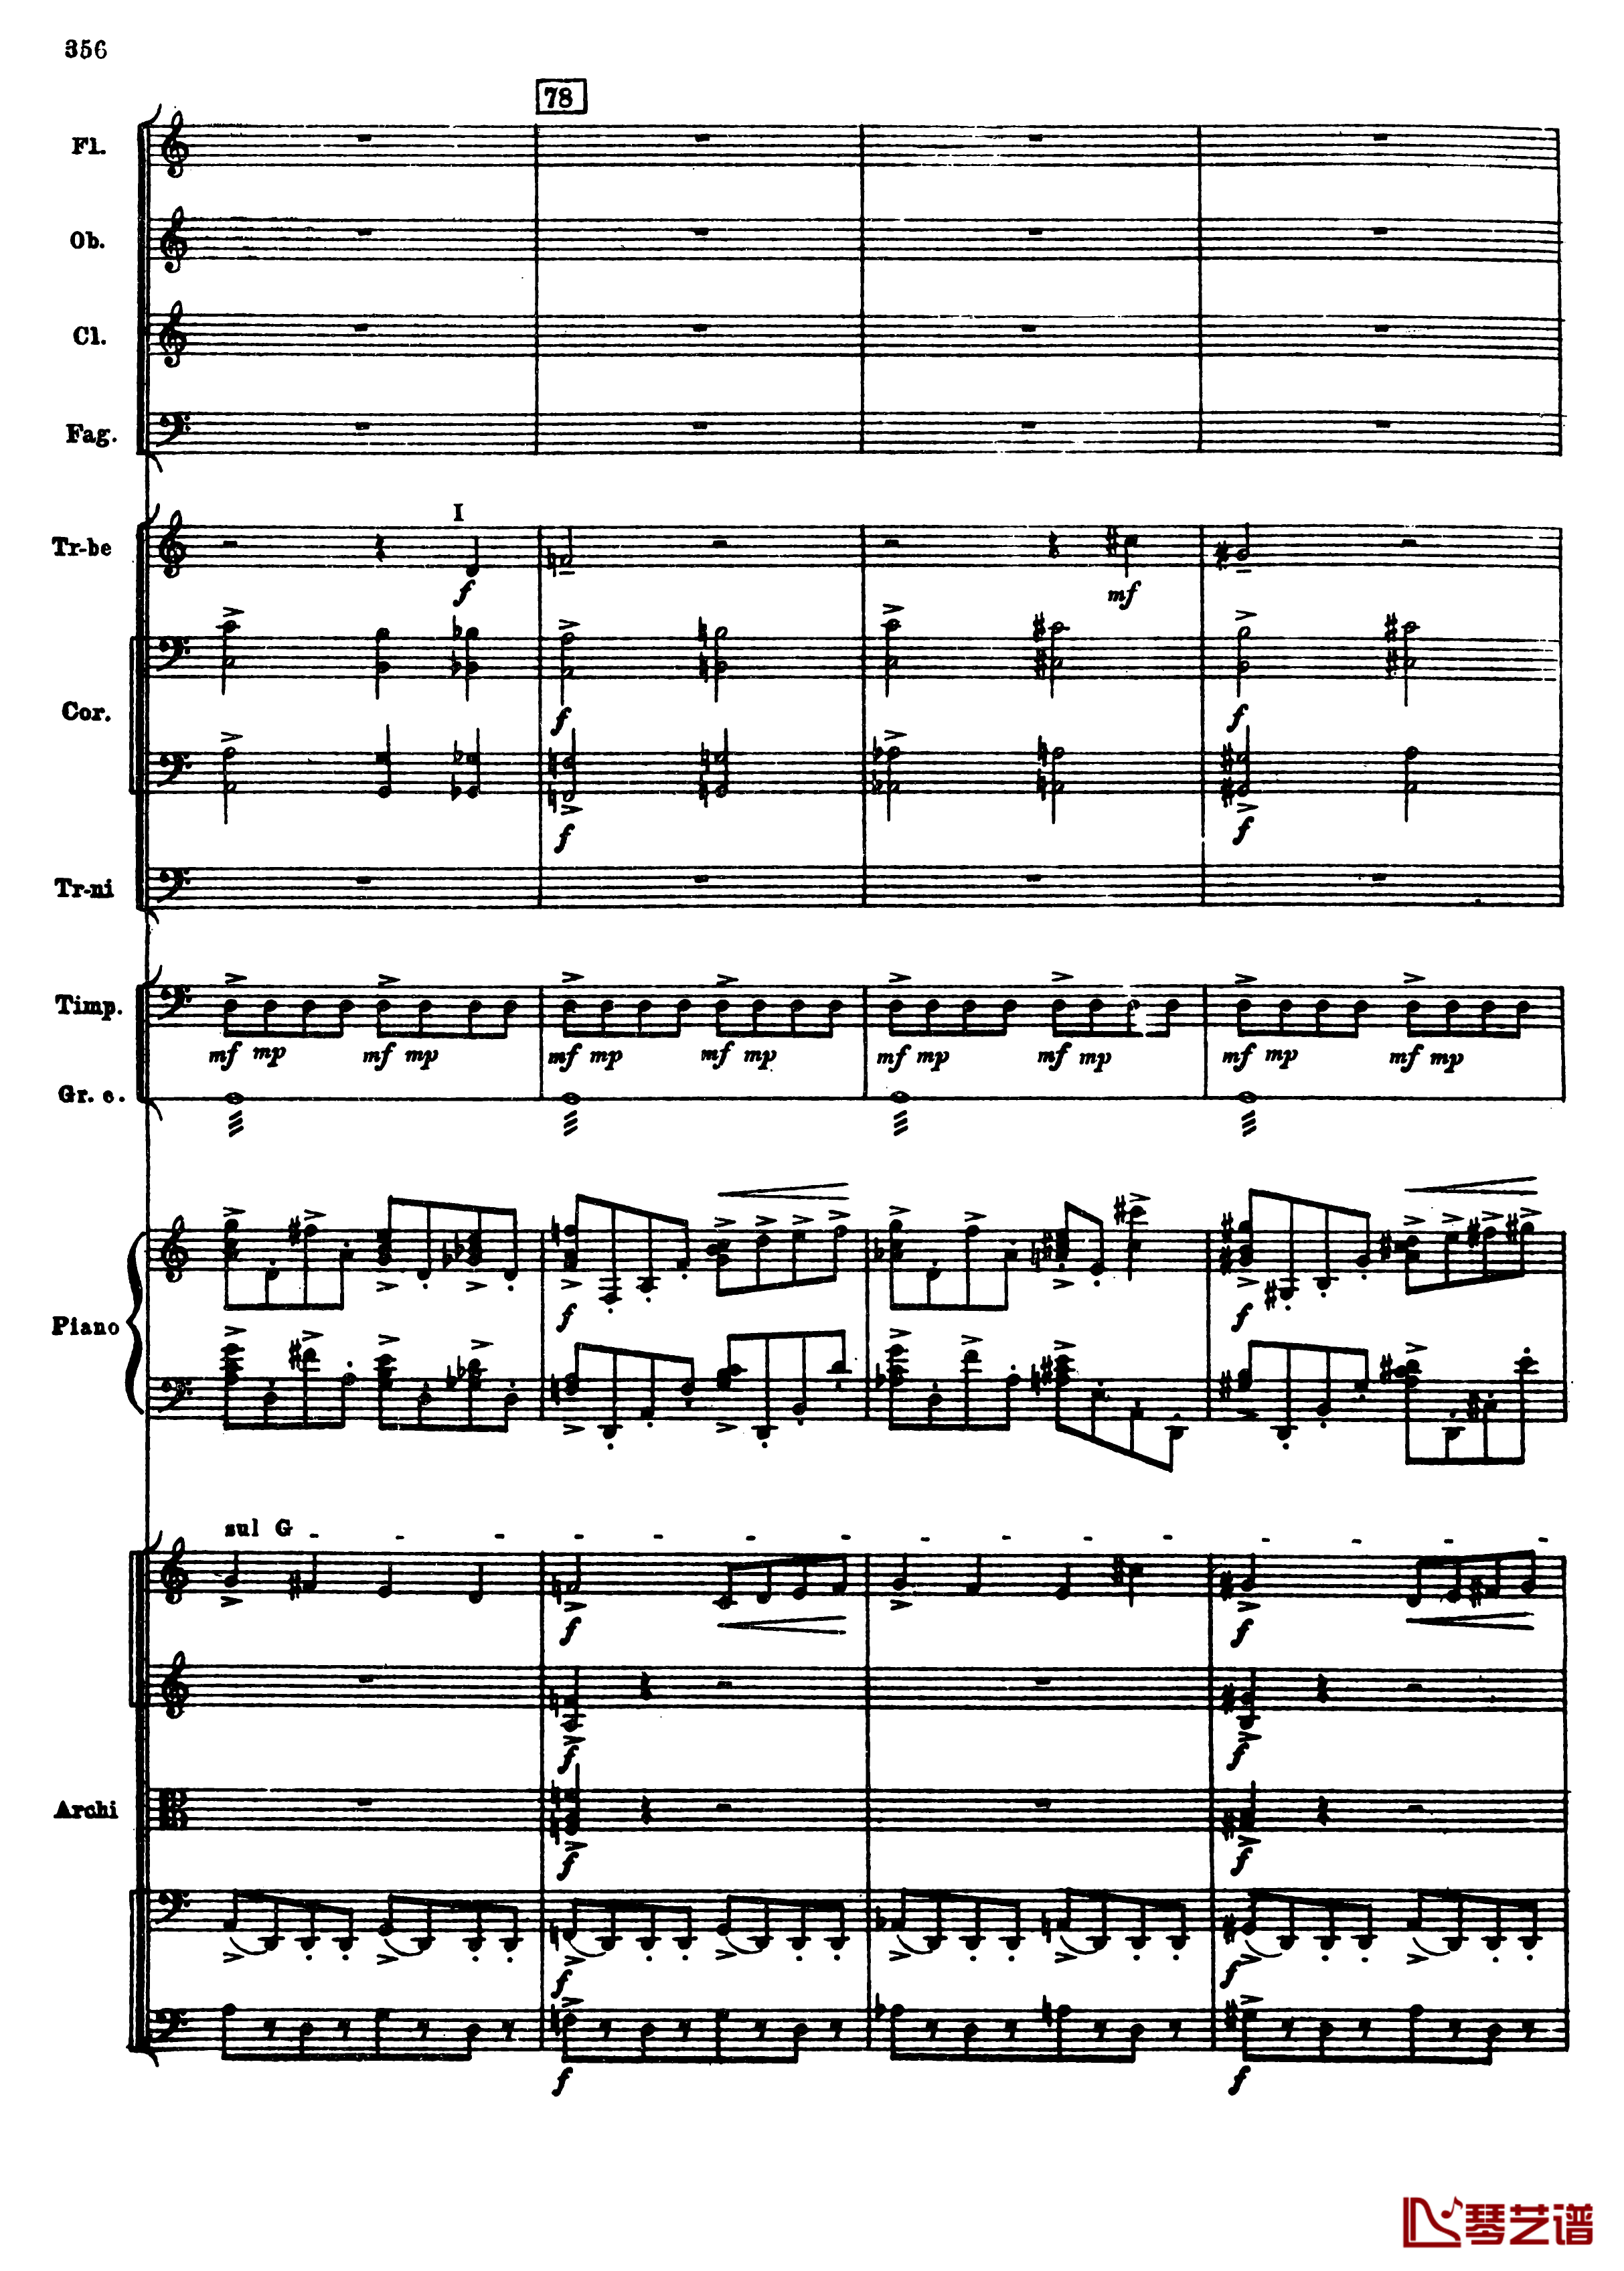 普罗科菲耶夫第三钢琴协奏曲钢琴谱-总谱-普罗科非耶夫88